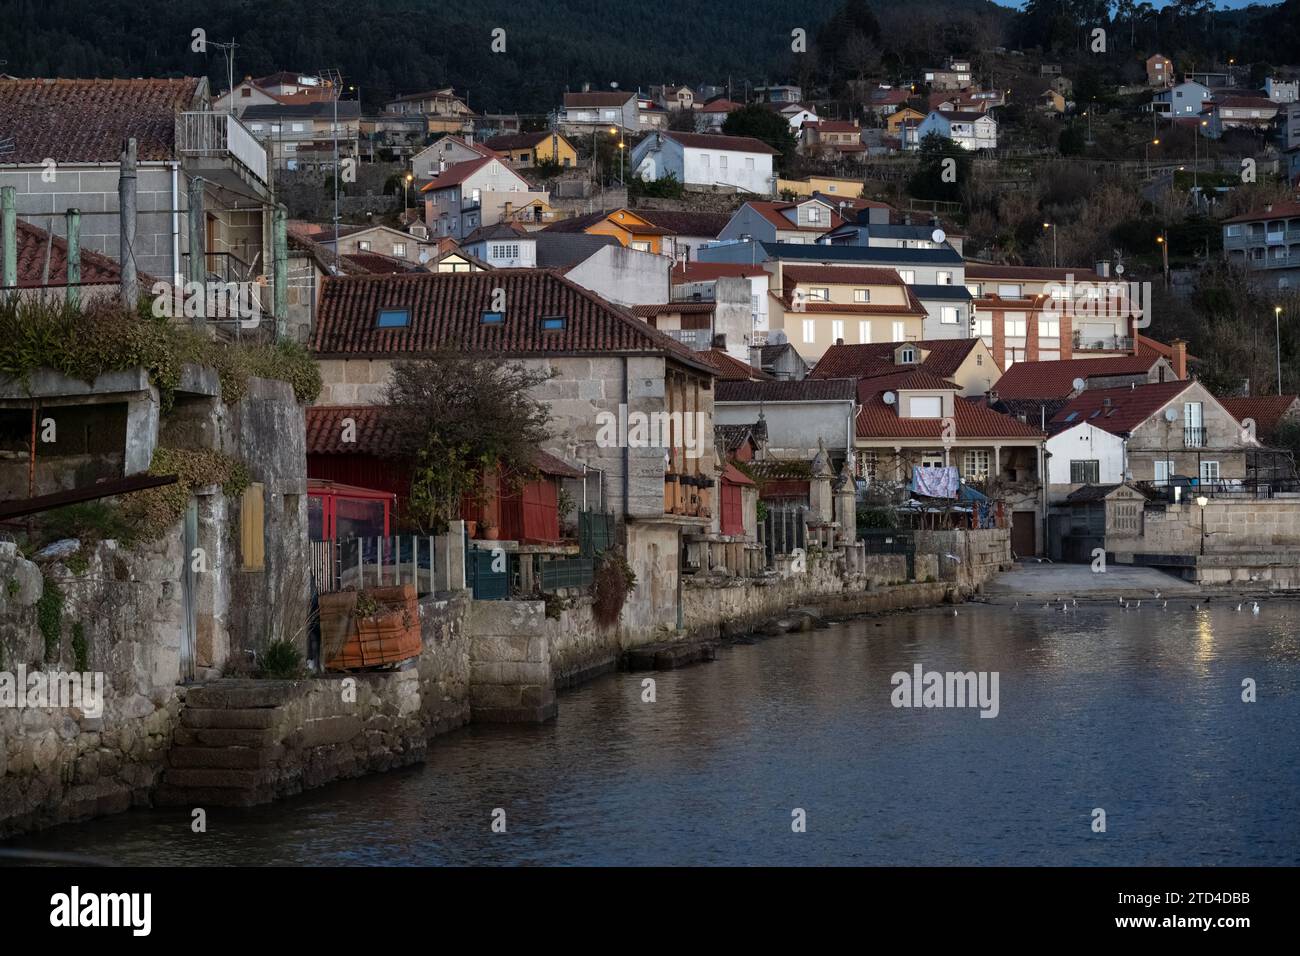 Malerische Stadt am Flussufer mit traditionellen Häusern in der Abenddämmerung, die eine ruhige europäische Dorfatmosphäre widerspiegeln. Stockfoto